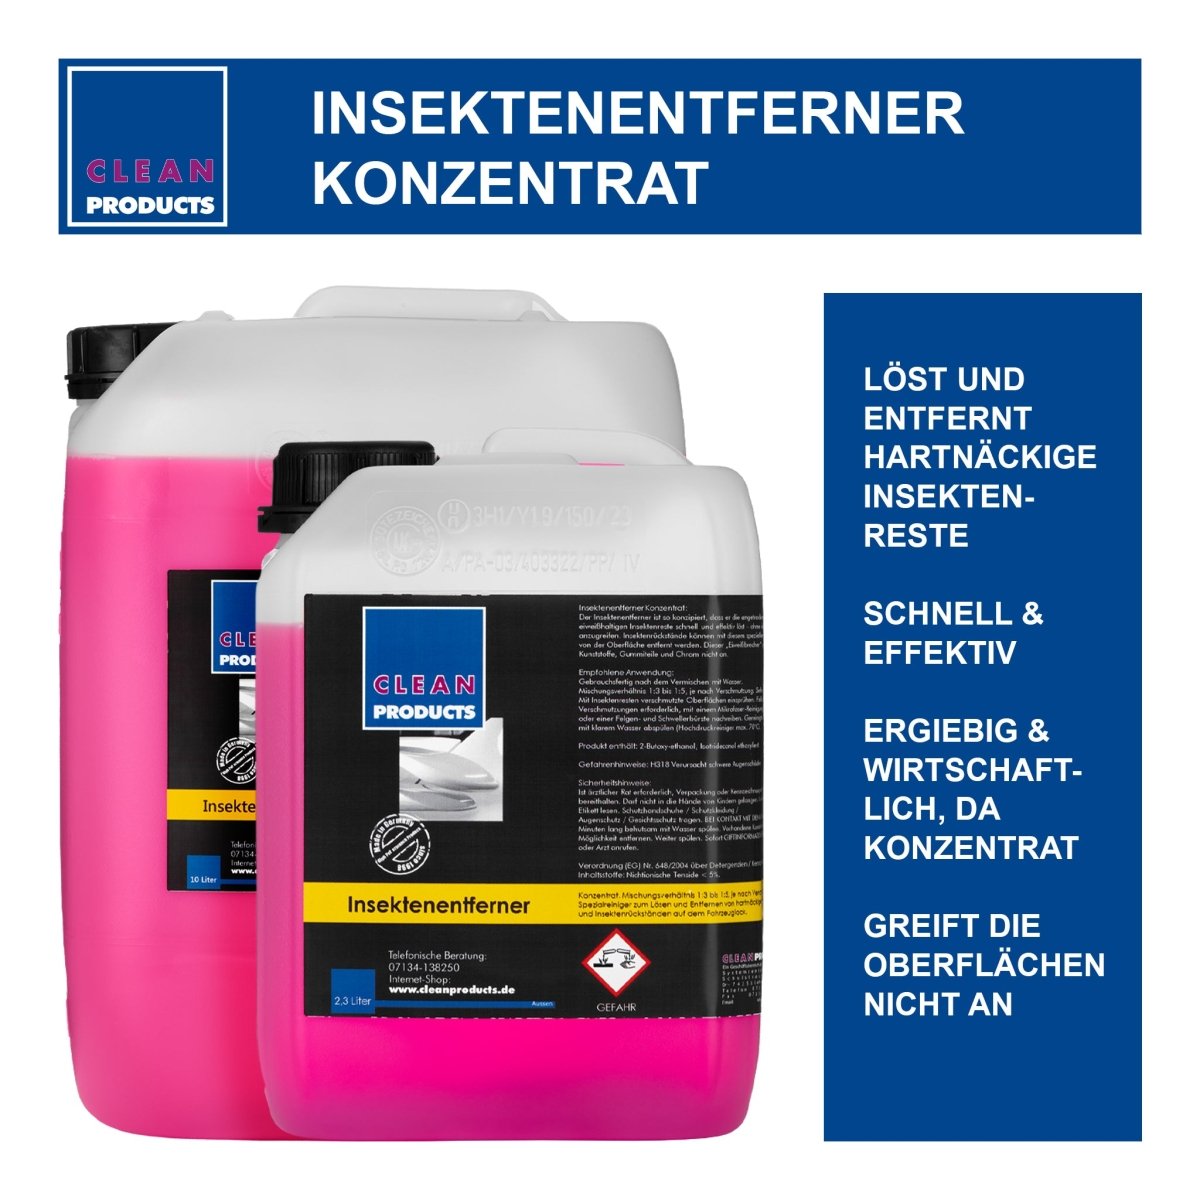 Insektenentferner Konzentrat (Insektenreiniger) - 10 Liter - CLEANPRODUCTS